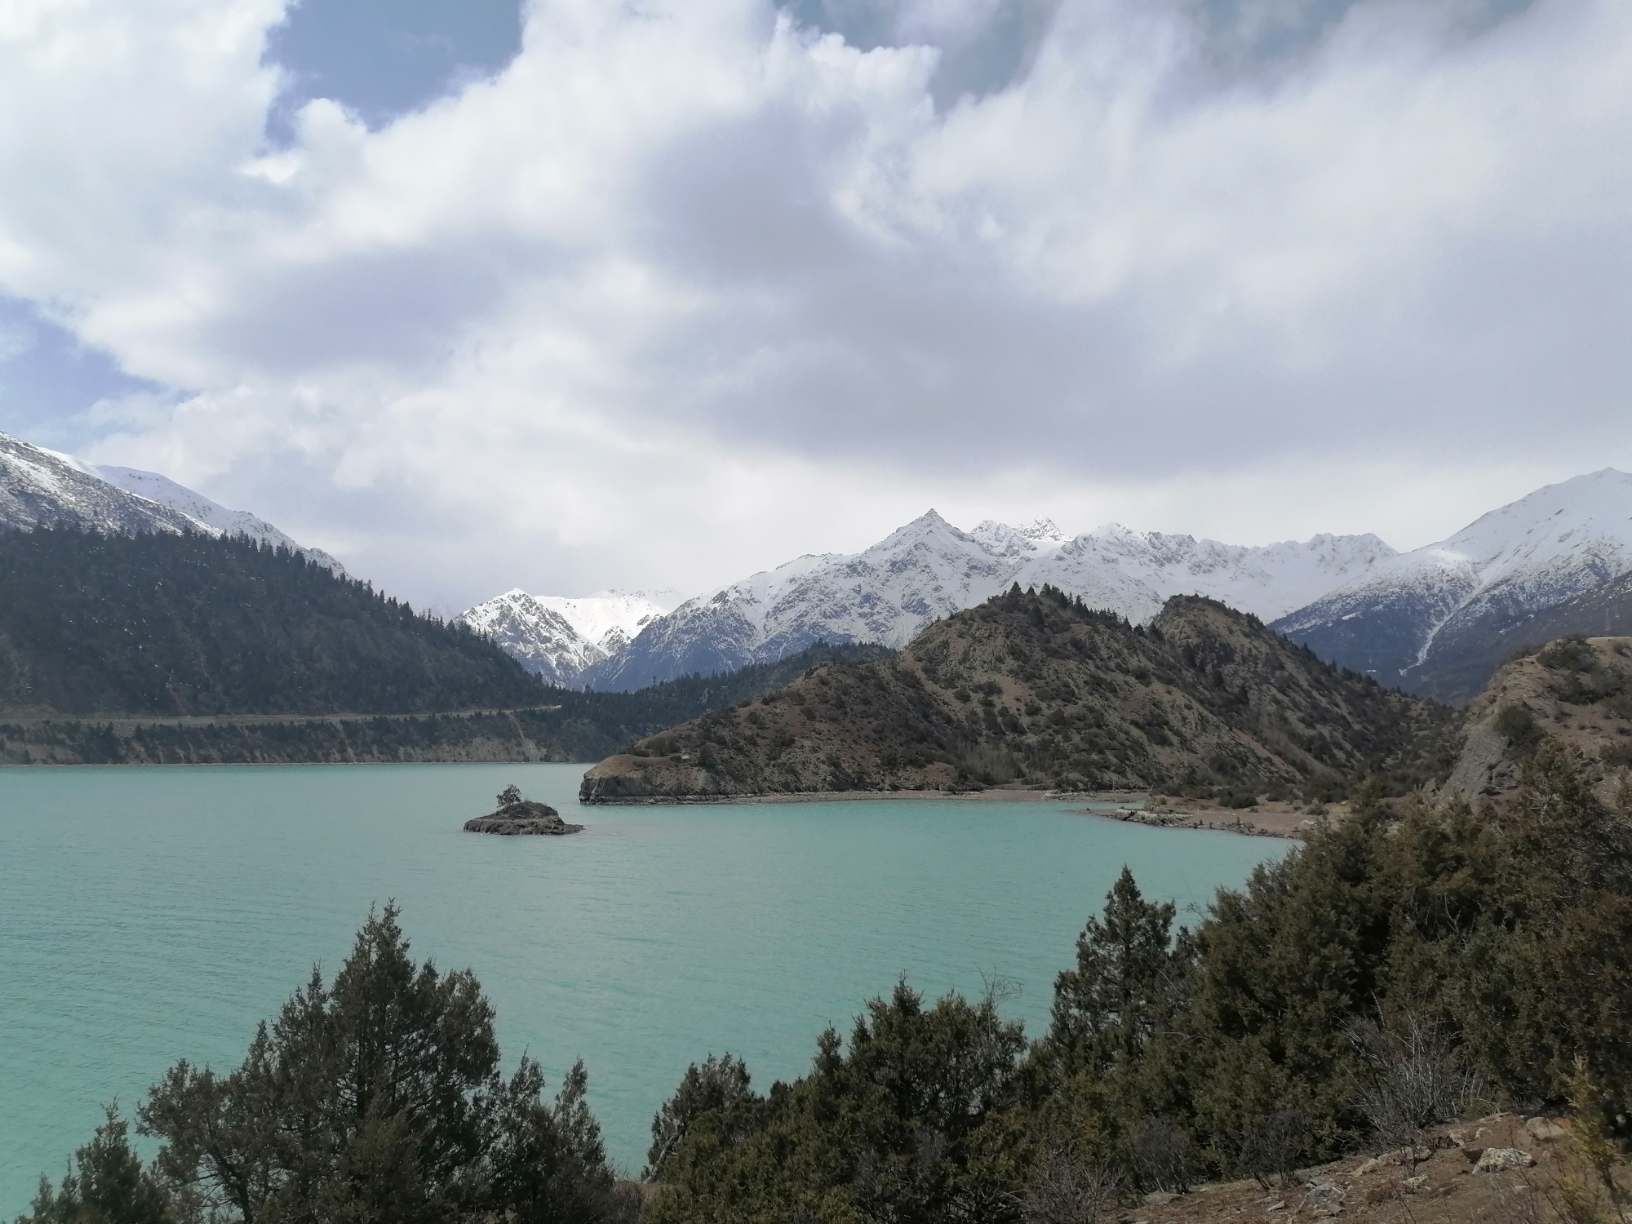 4月11旧西藏八宿县一然乌湖一德姆拉观景点一察隅大峽谷观景点一察隅县。走国道318从八宿到然乌湖，路